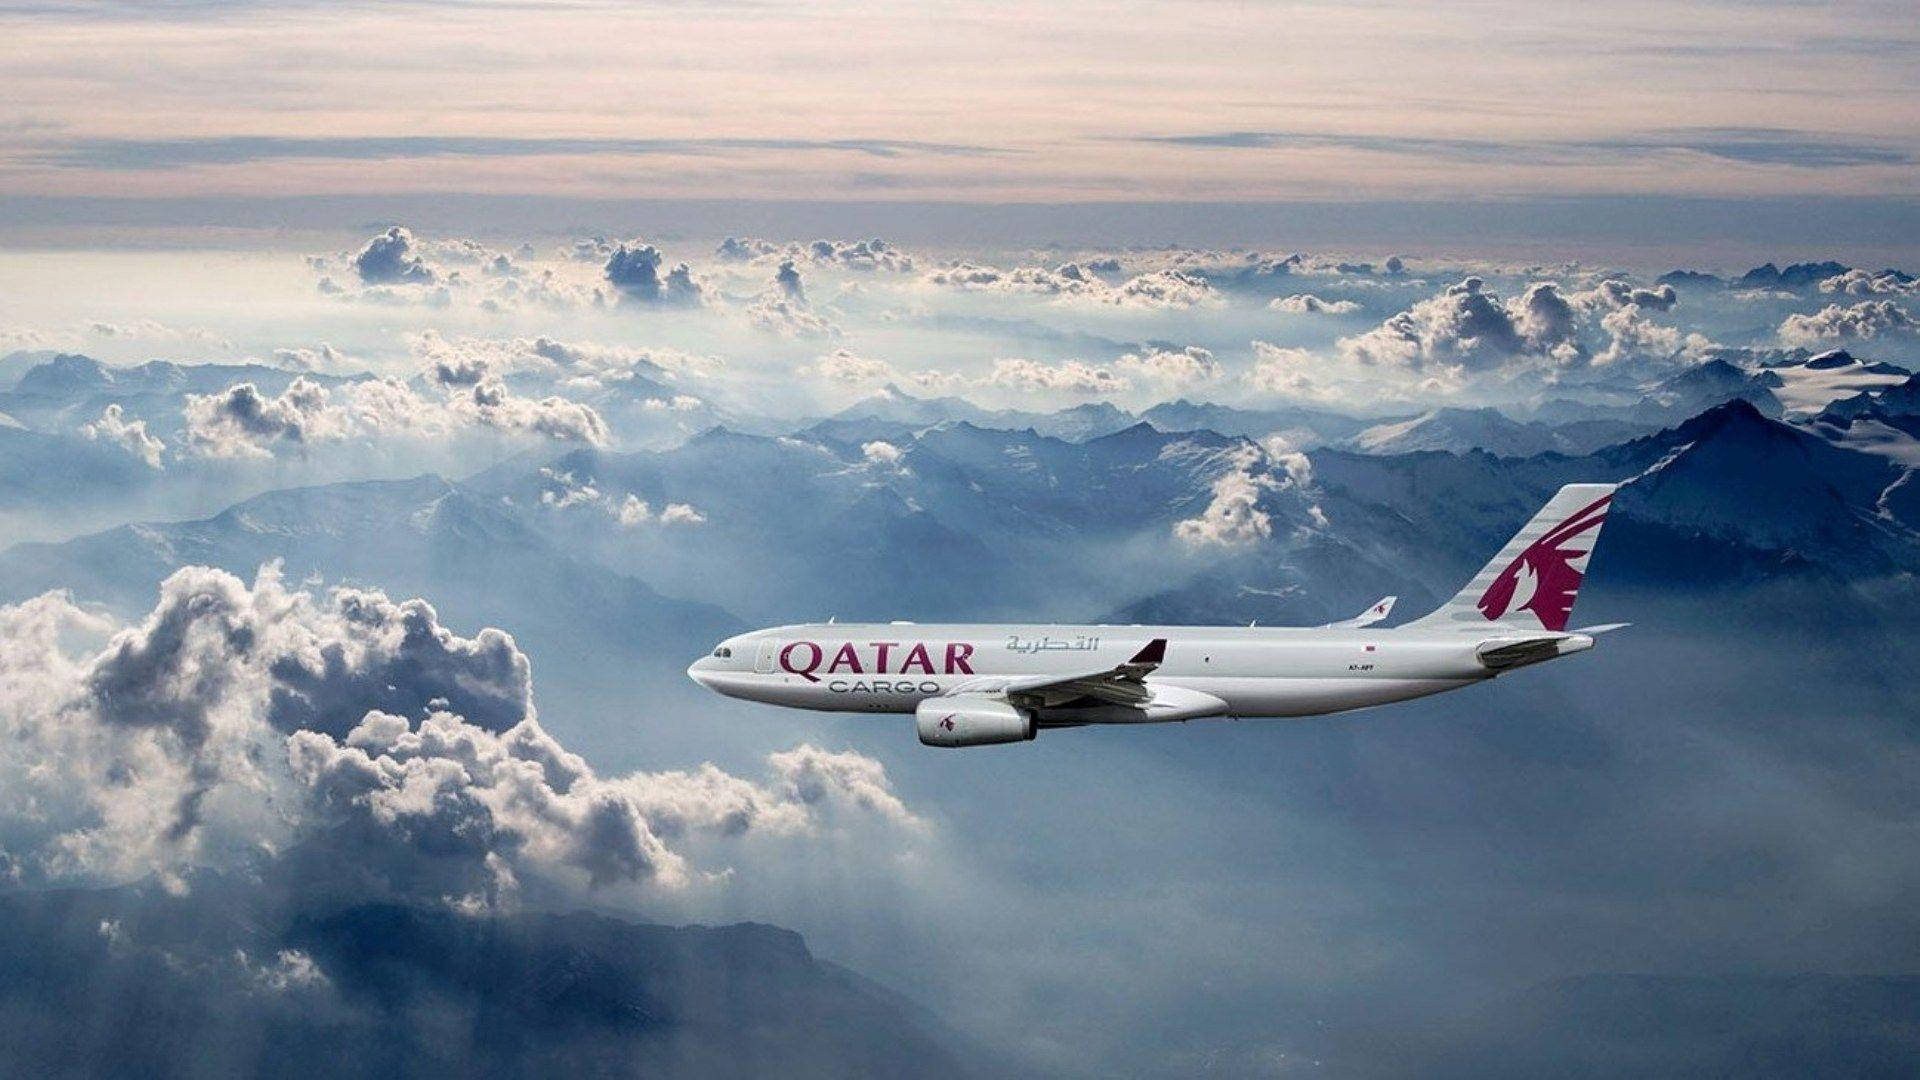 Download Qatar Airways Plane Blue Sky Wallpaper 